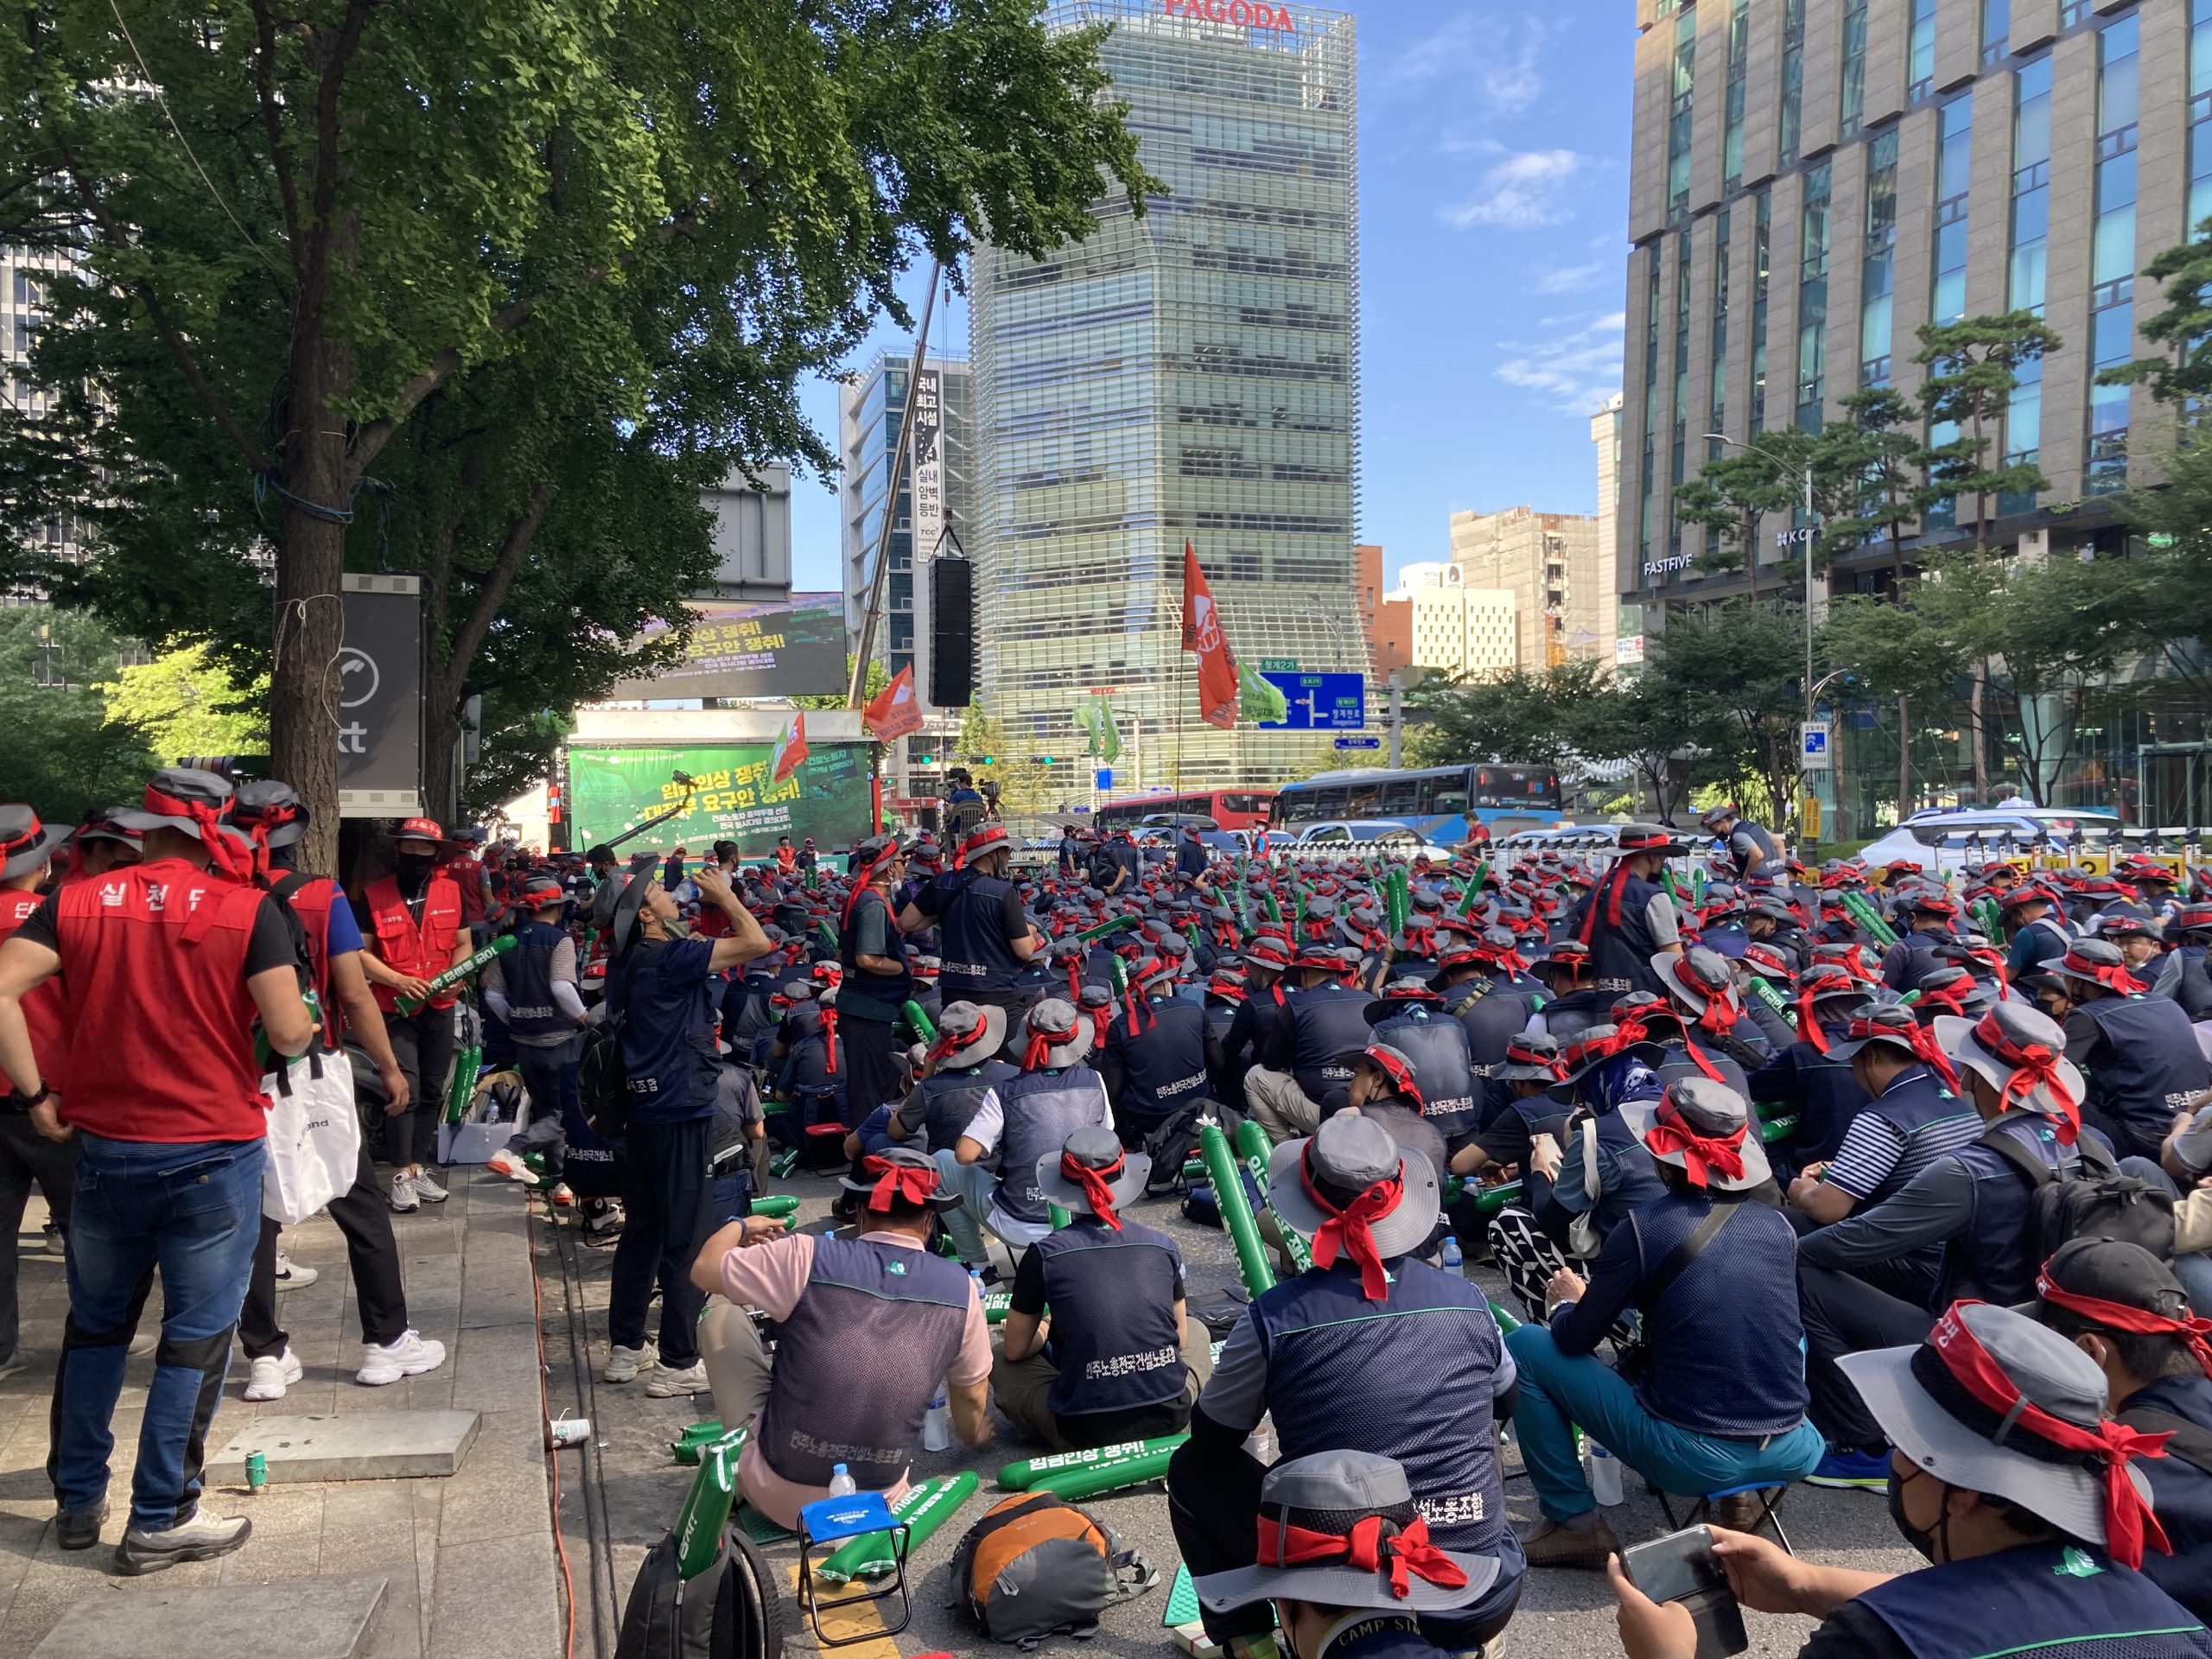 Daisuke Nakazawa - ソウルでのデモから公共空間のふるまいを考える